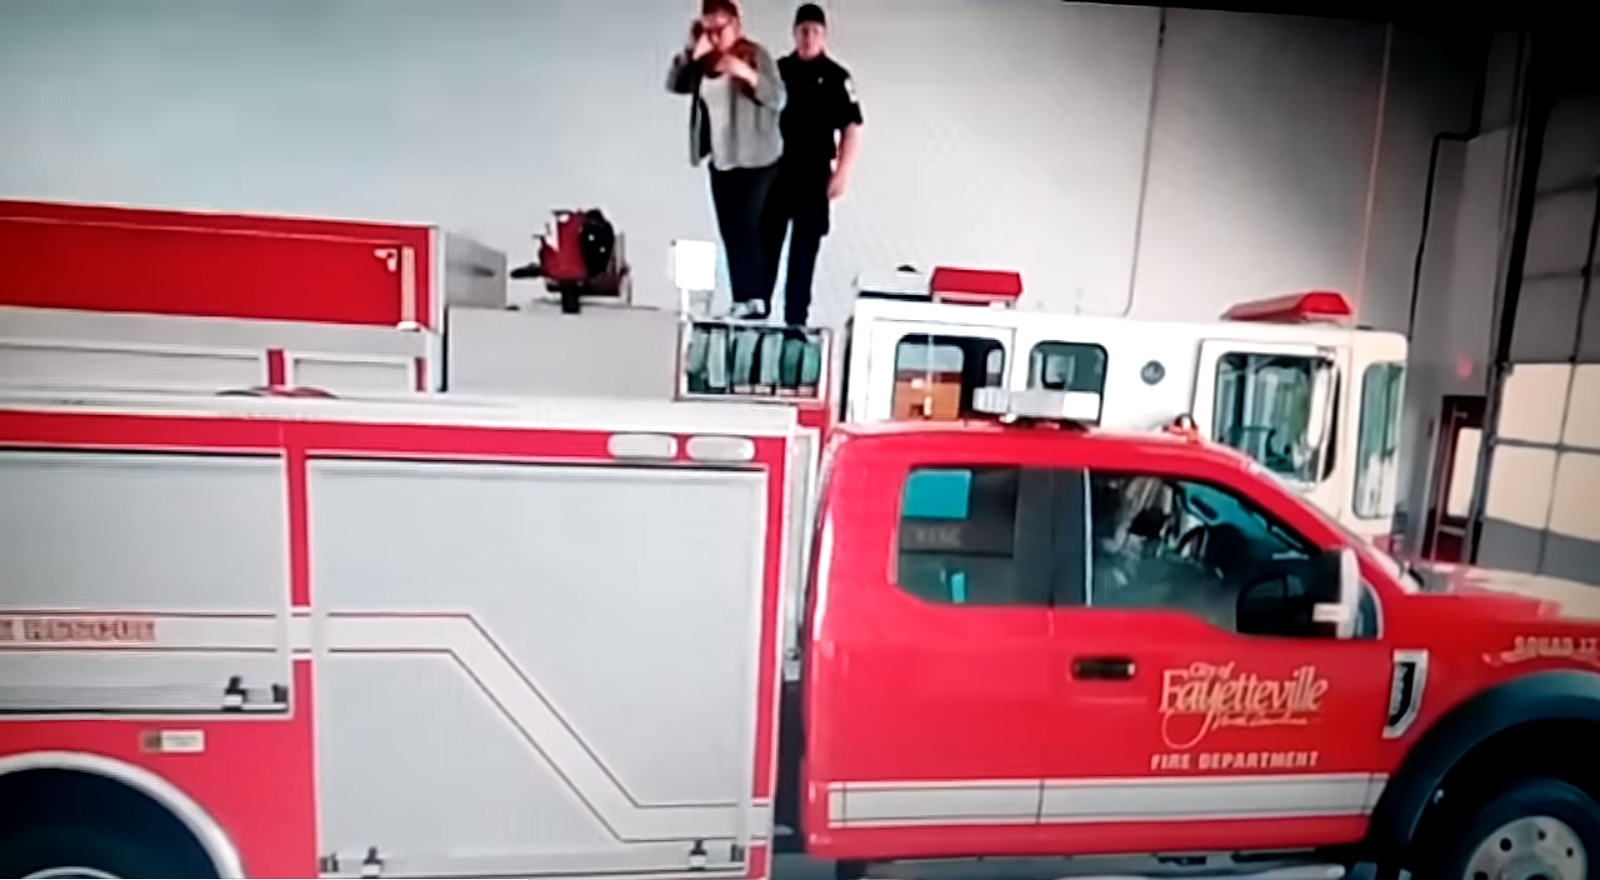 رجل إطفاء أمريكى يطلب يد صديقته للزواج